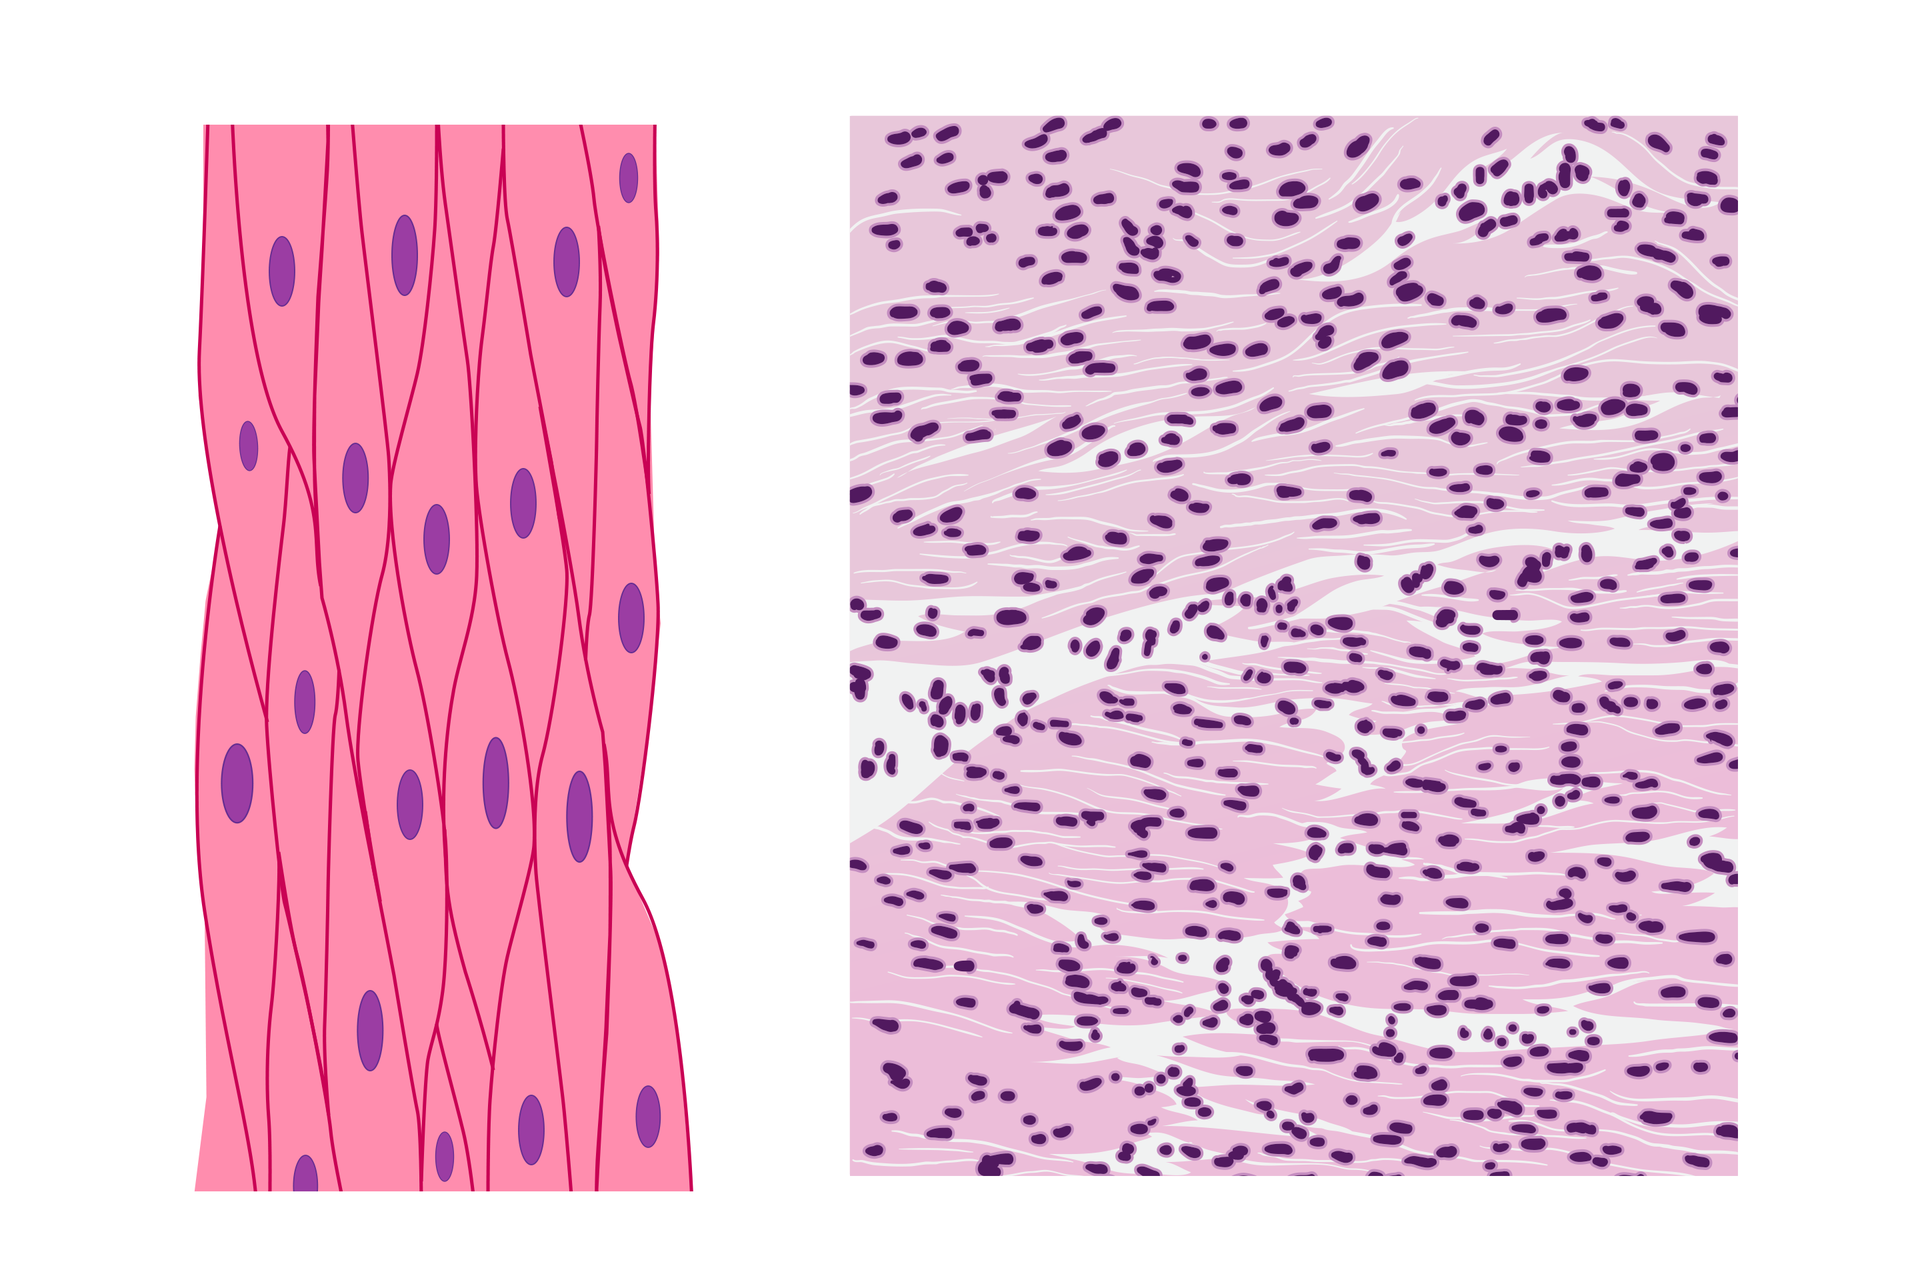 Tkanka mięśniowa gładka to wrzecionowate komórki ściśle przylegające. Mają różowy kolor. W każdym wrzecionie widać jedno fioletowe jądro komórkowe. Na fotografii mikroskopowej przedstawiono wiele poziomo ułożonych , wrzecionowatych komórek. W każdej wyraźne jądro.